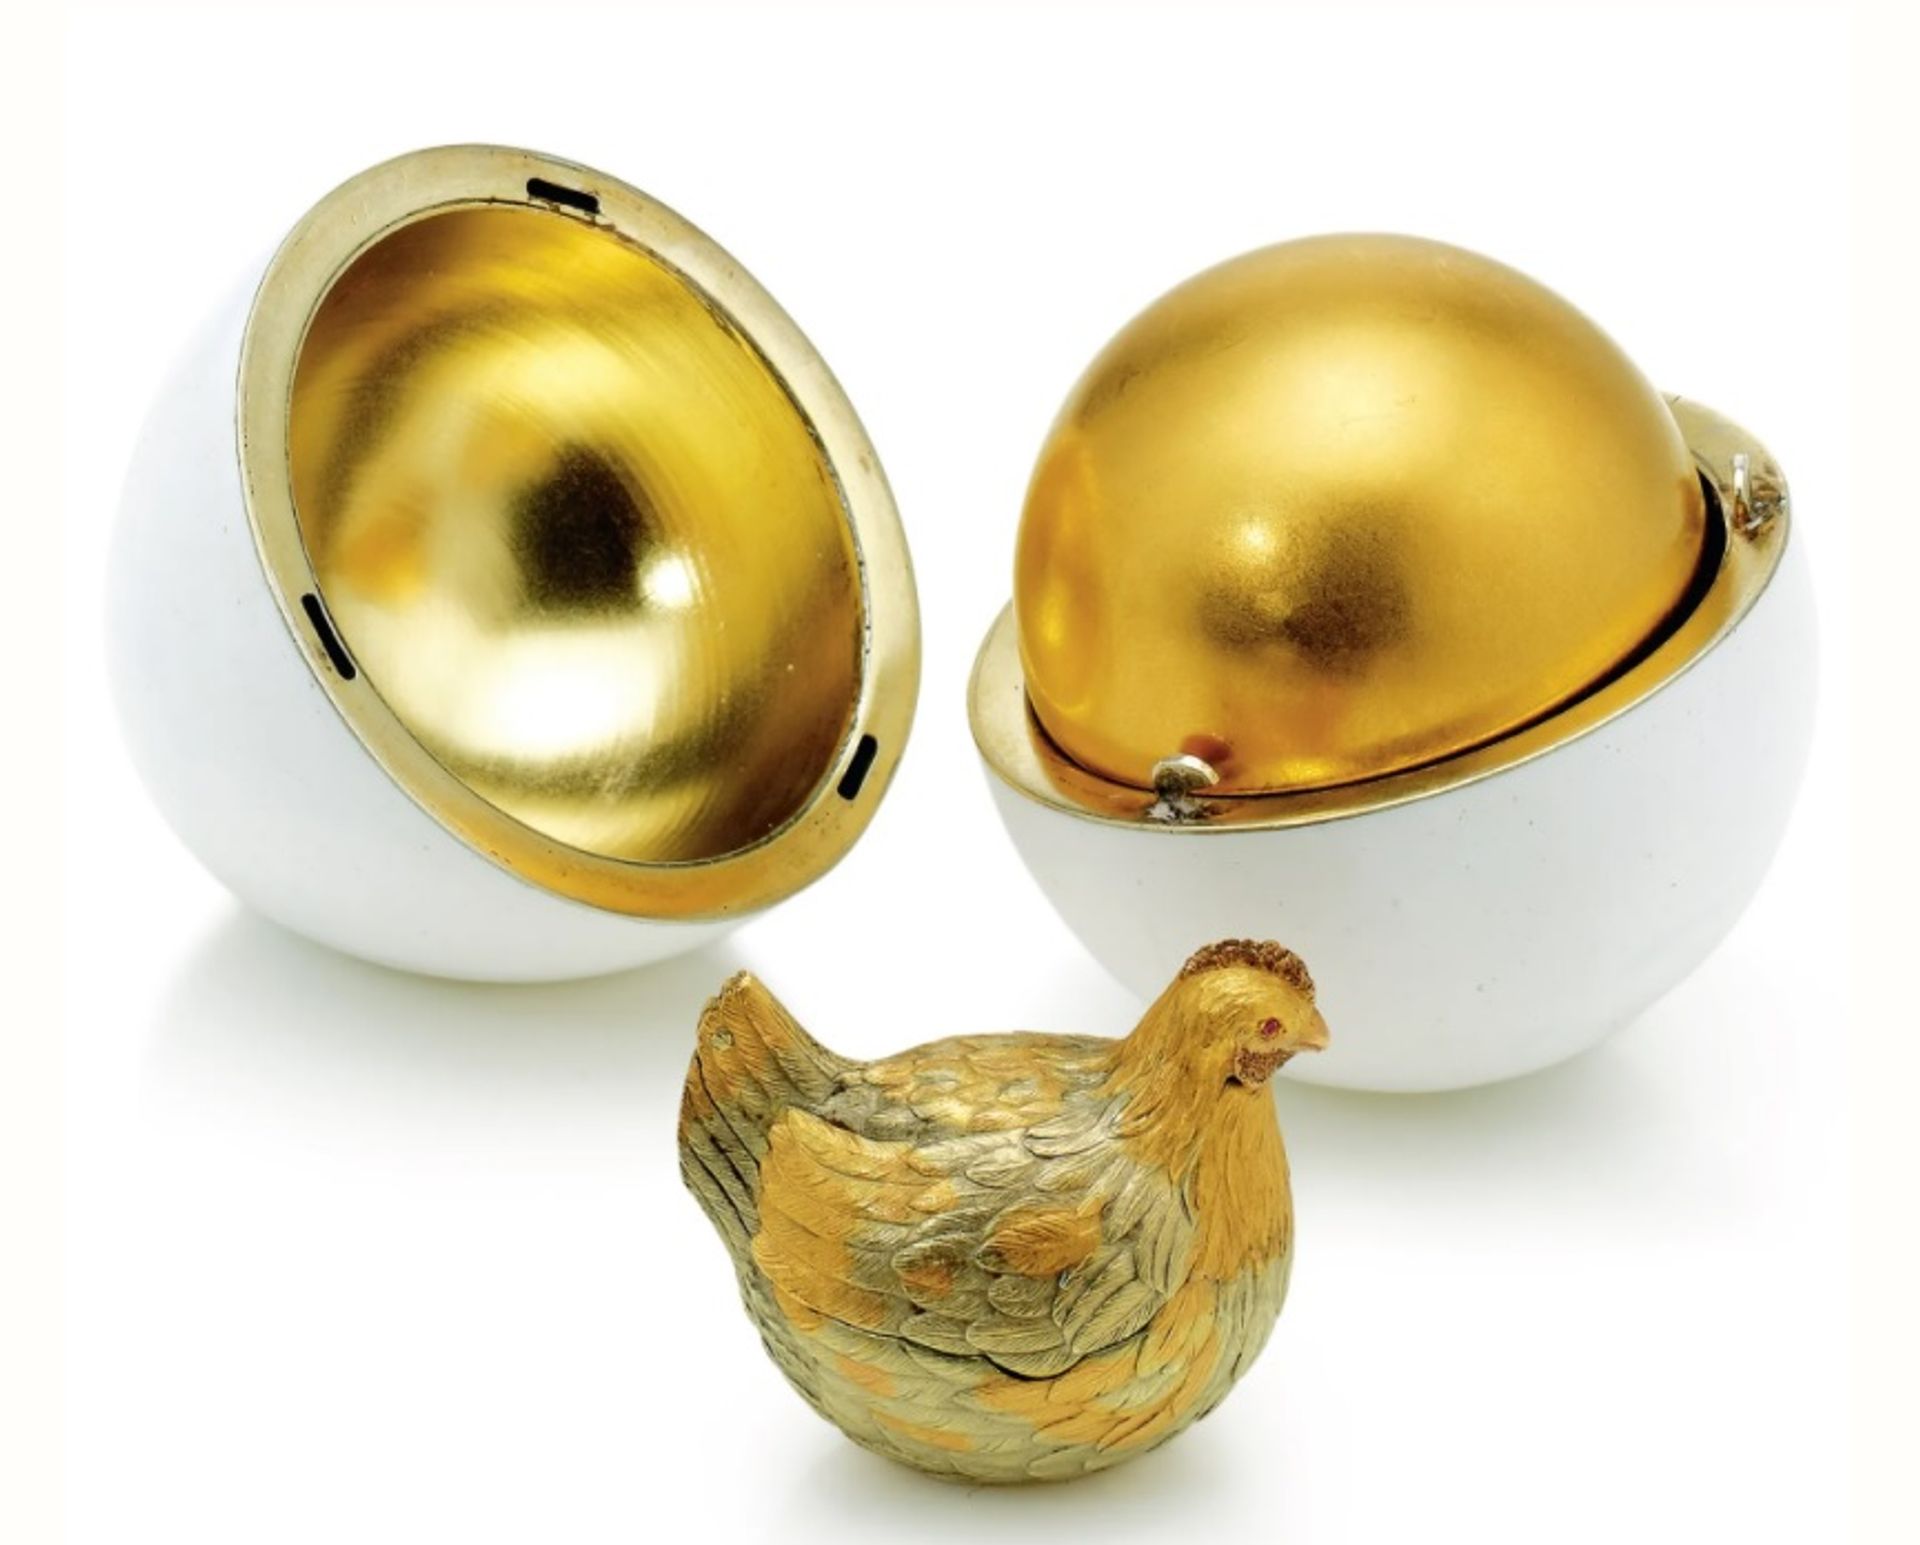 ביצת התרנגולת (1884-85) מאת קרל פברג'ה הושאלה ל-V&A ע"י ויקטור וקסלברג.

באדיבות V&A